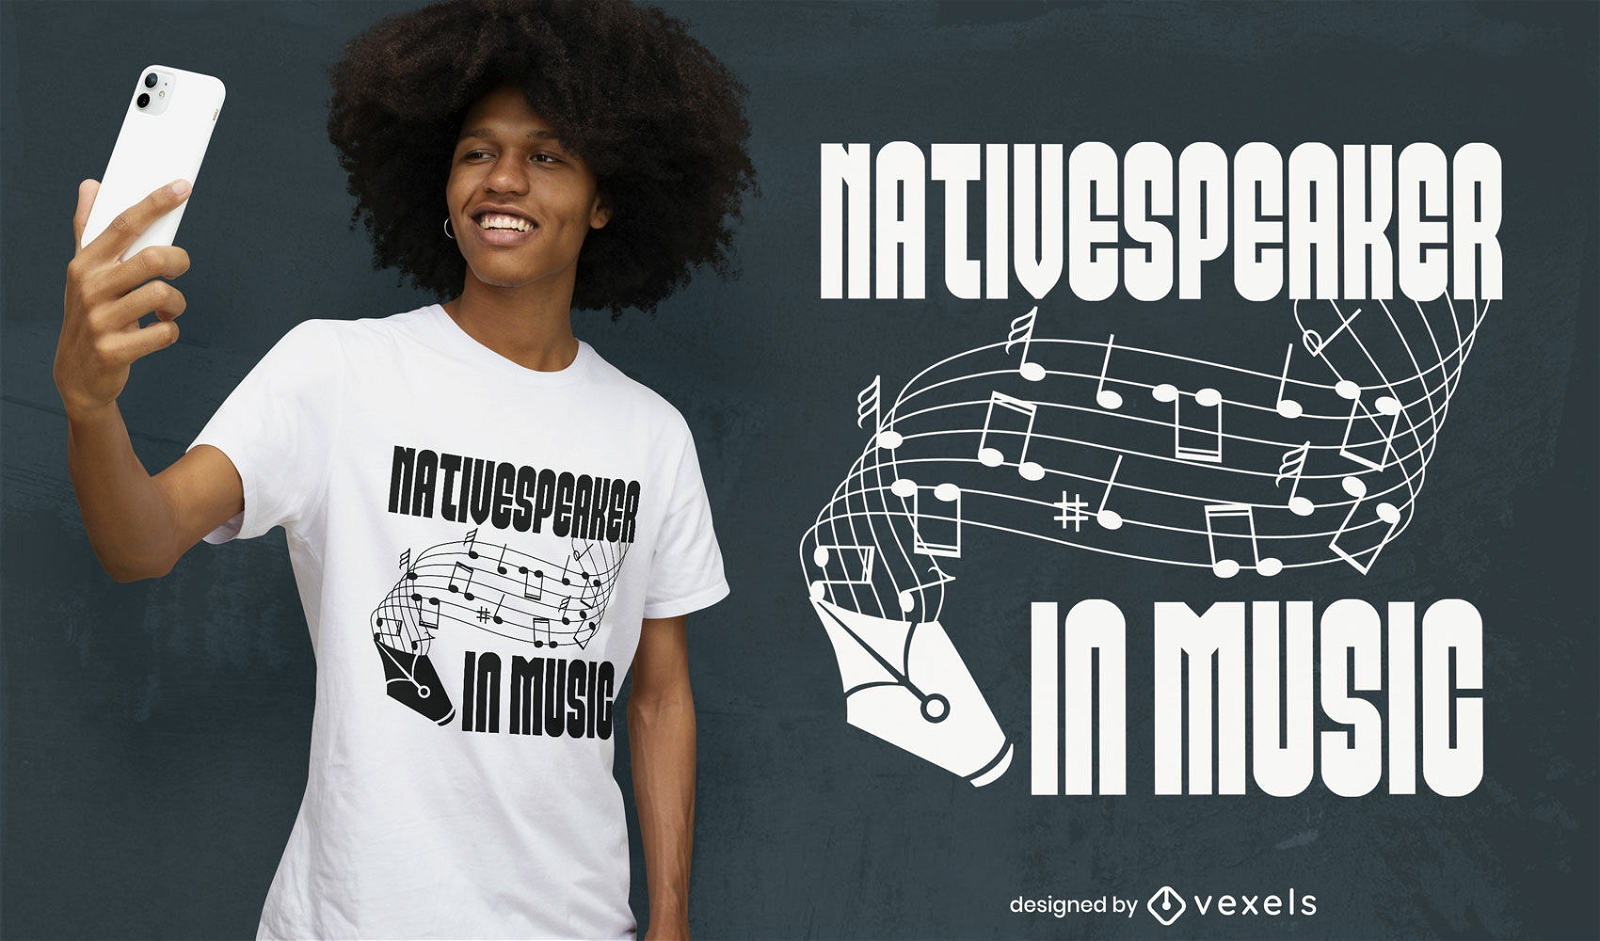 Native speaker in music t-shirt design